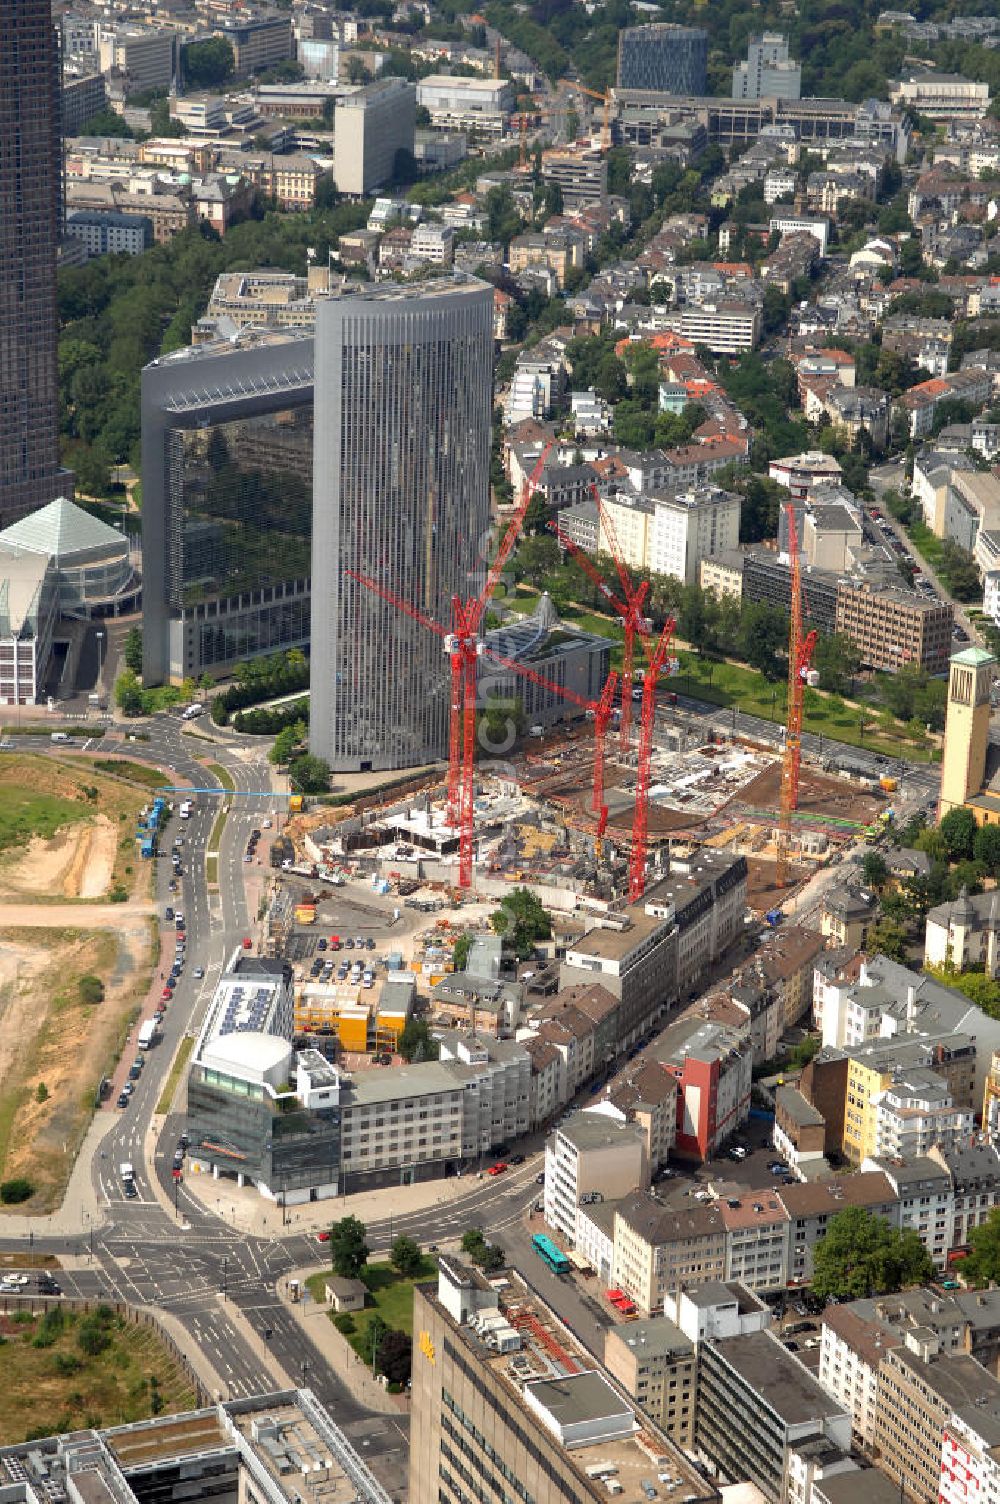 Luftaufnahme Frankfurt am Main - Baustelle des Tower 185 und die Kastor und Pollux-Hochhäuser in Frankfurt am Main